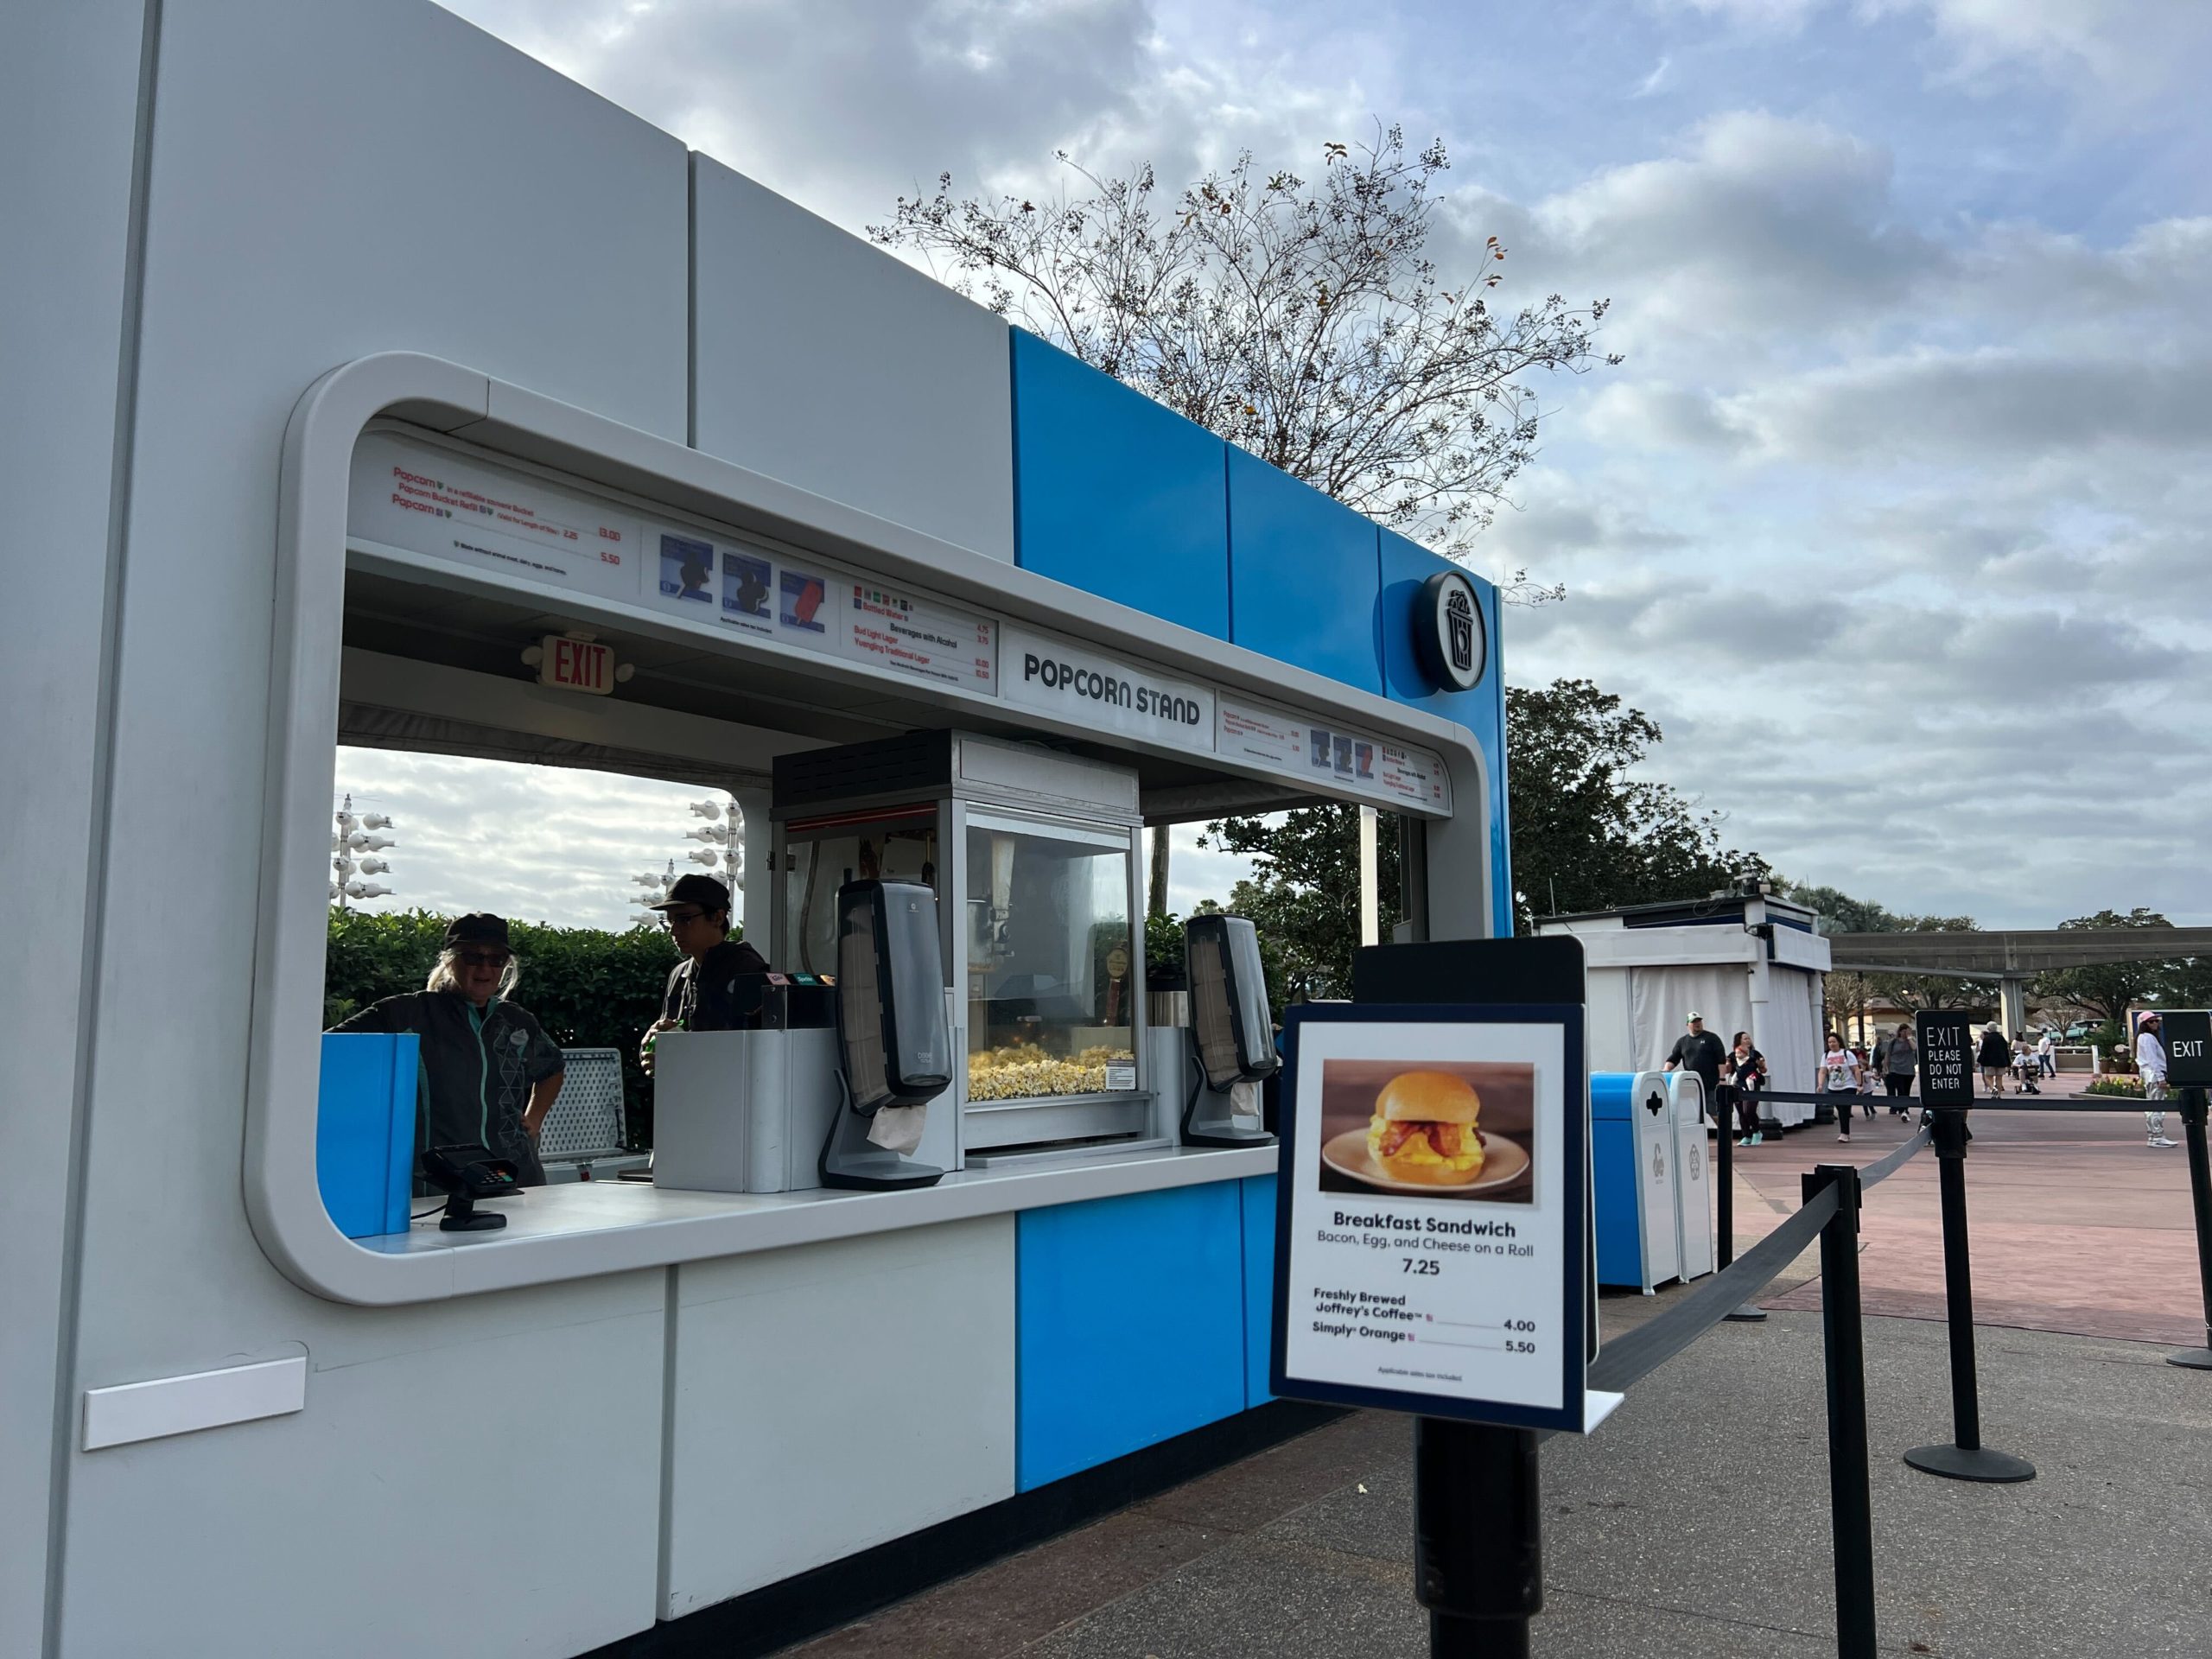 epcot breakfast sandwich snack kiosks